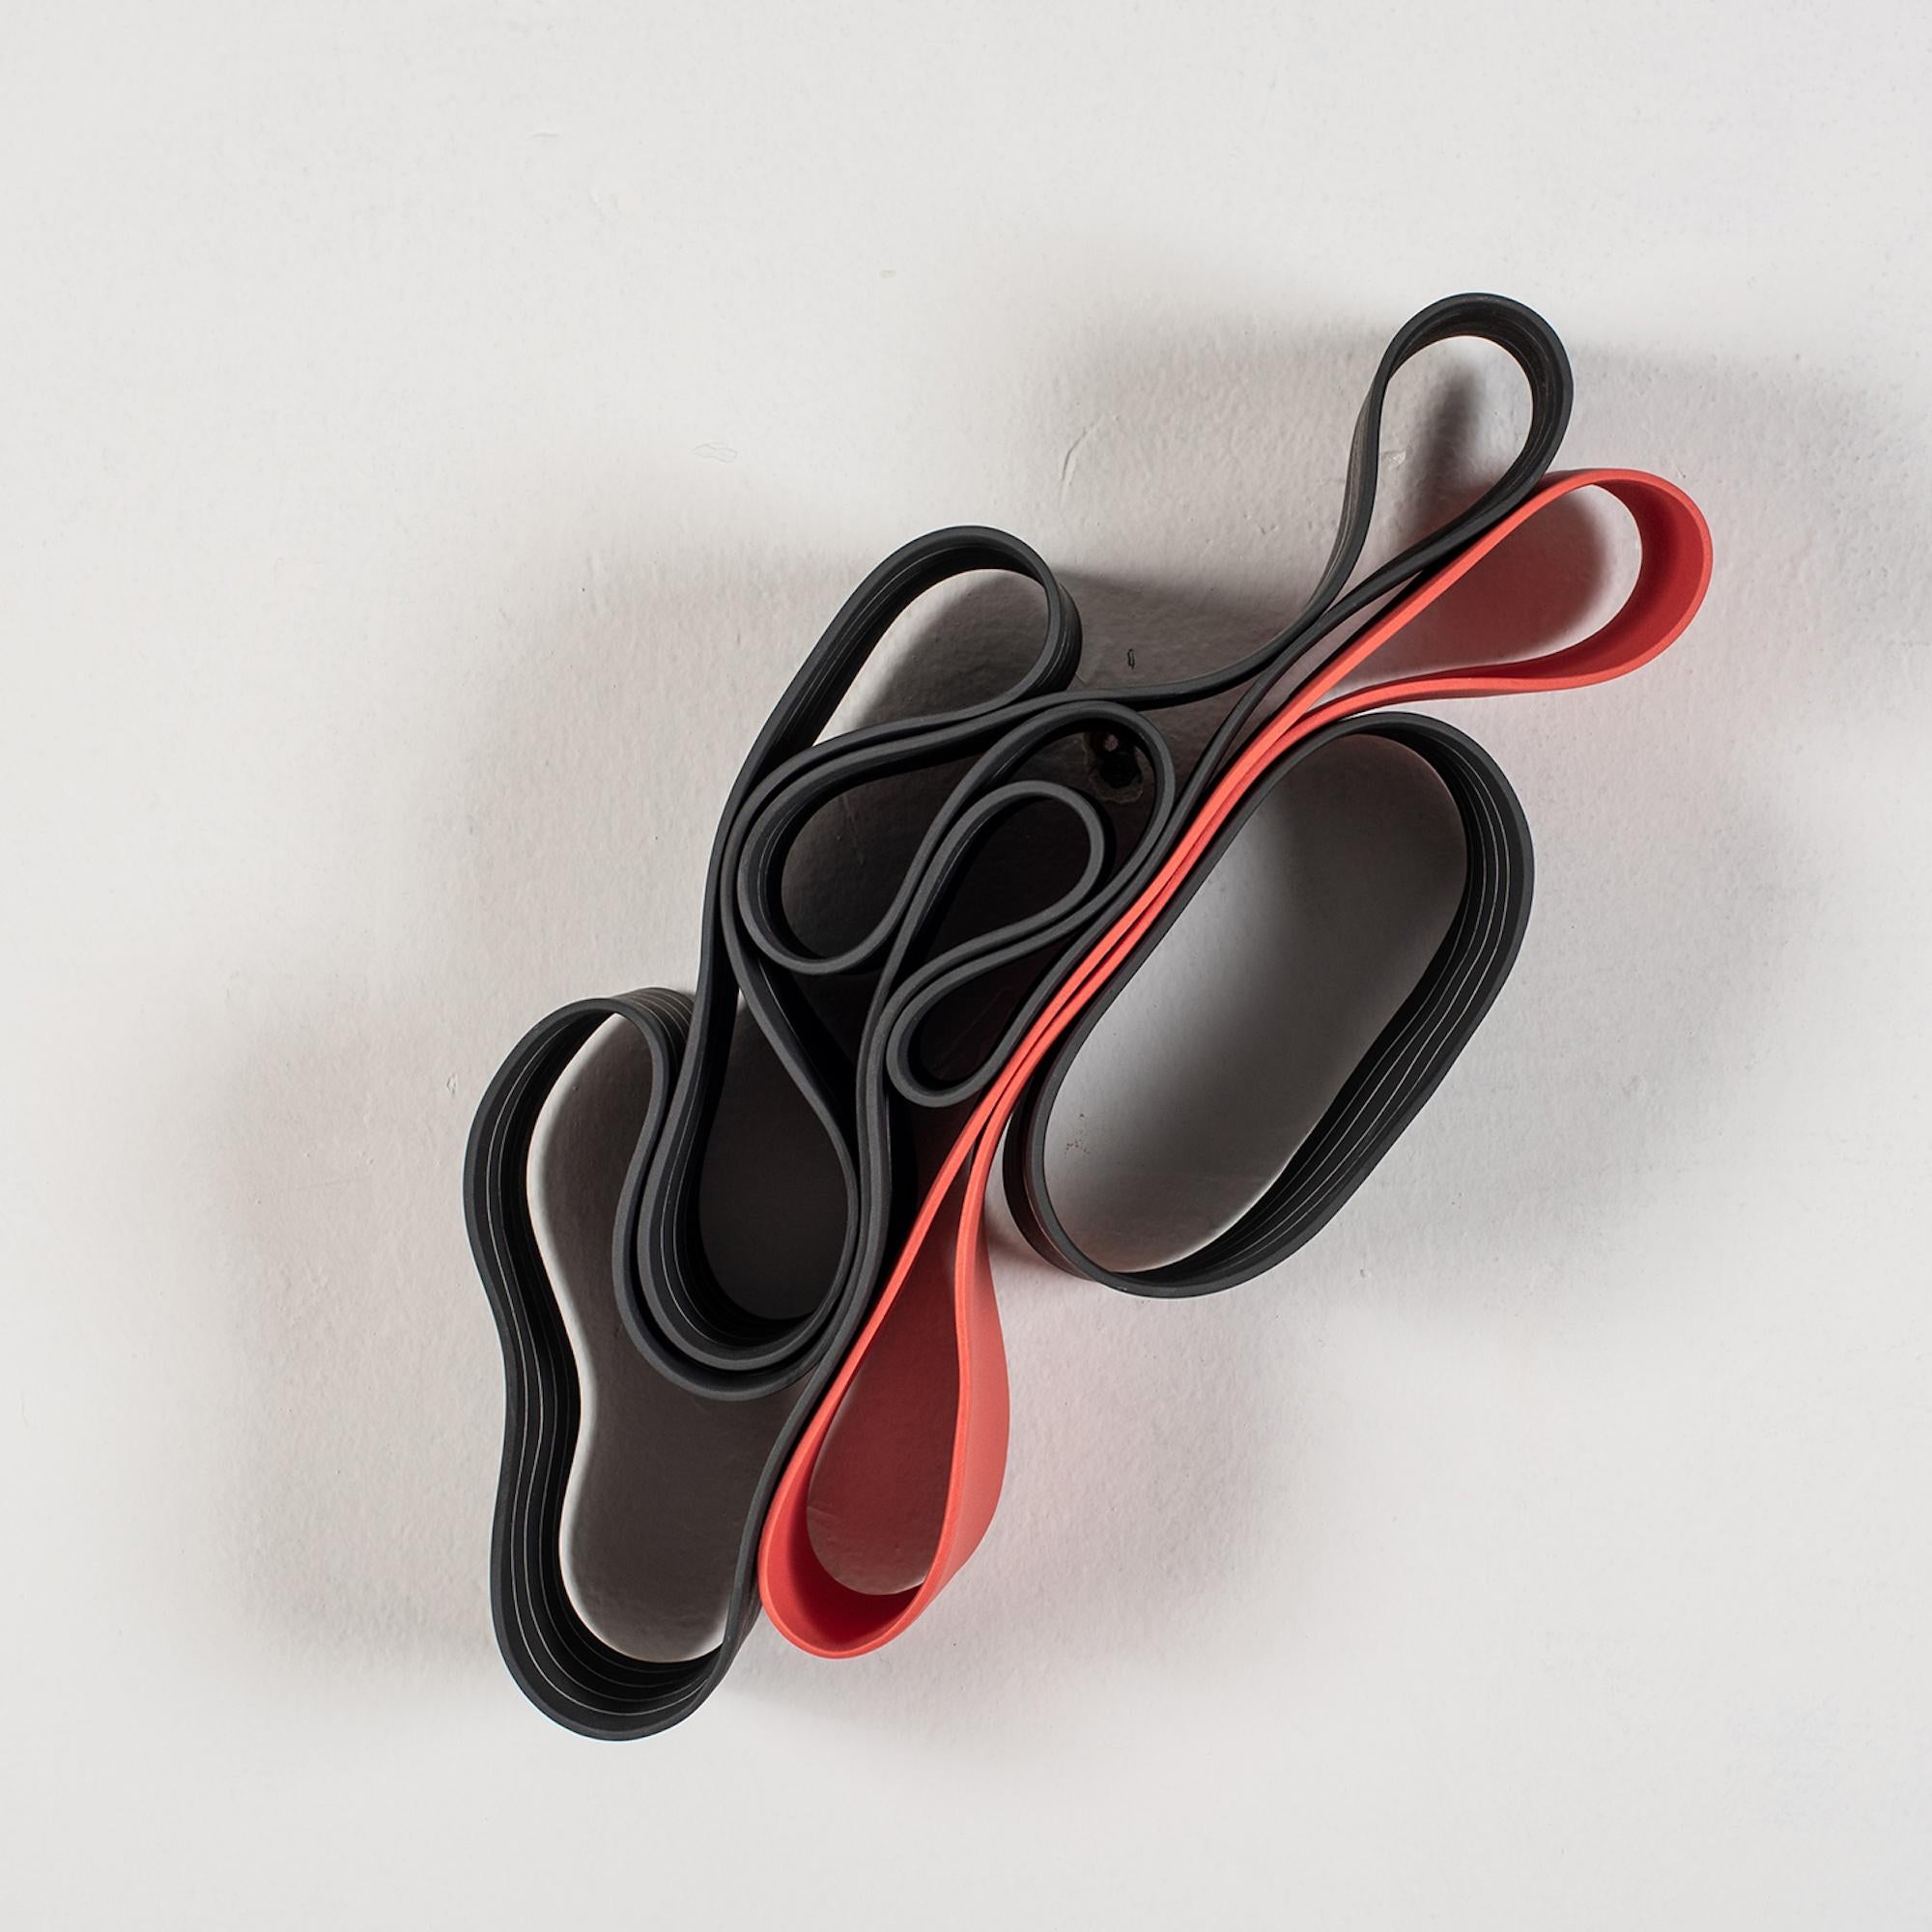 Ands Objects for Objects #2 de Simcha Even-Chen - Sculpture en porcelaine, rouge et noir, lignes en vente 1